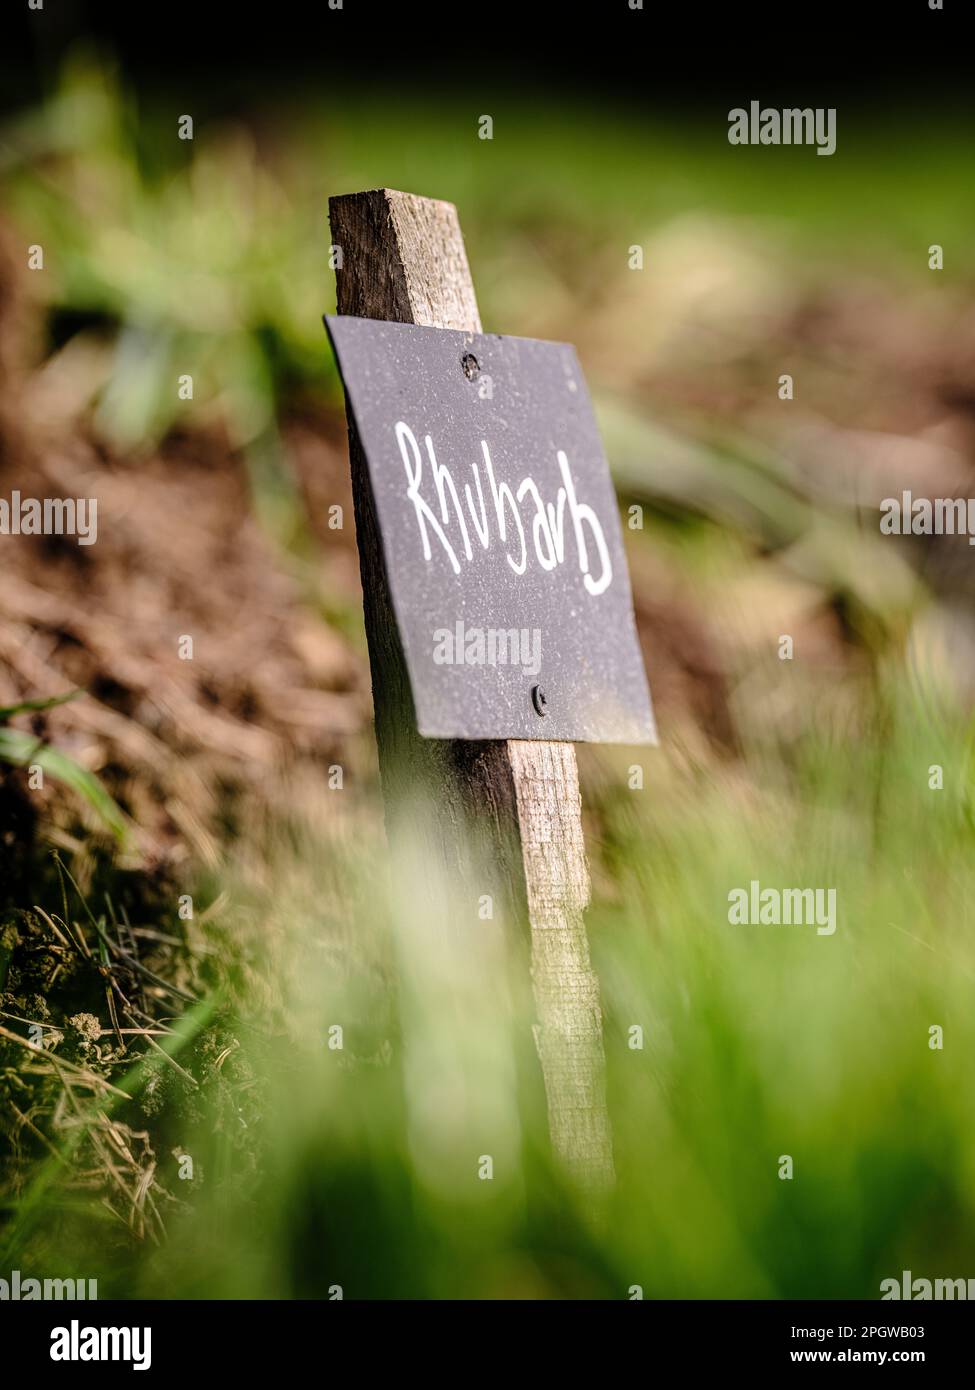 Cultiver vos propres légumes et herbes - étiquettes écrites à la craie sur des étiquettes noires pour le rhubarbe dans un jardin britannique. Banque D'Images